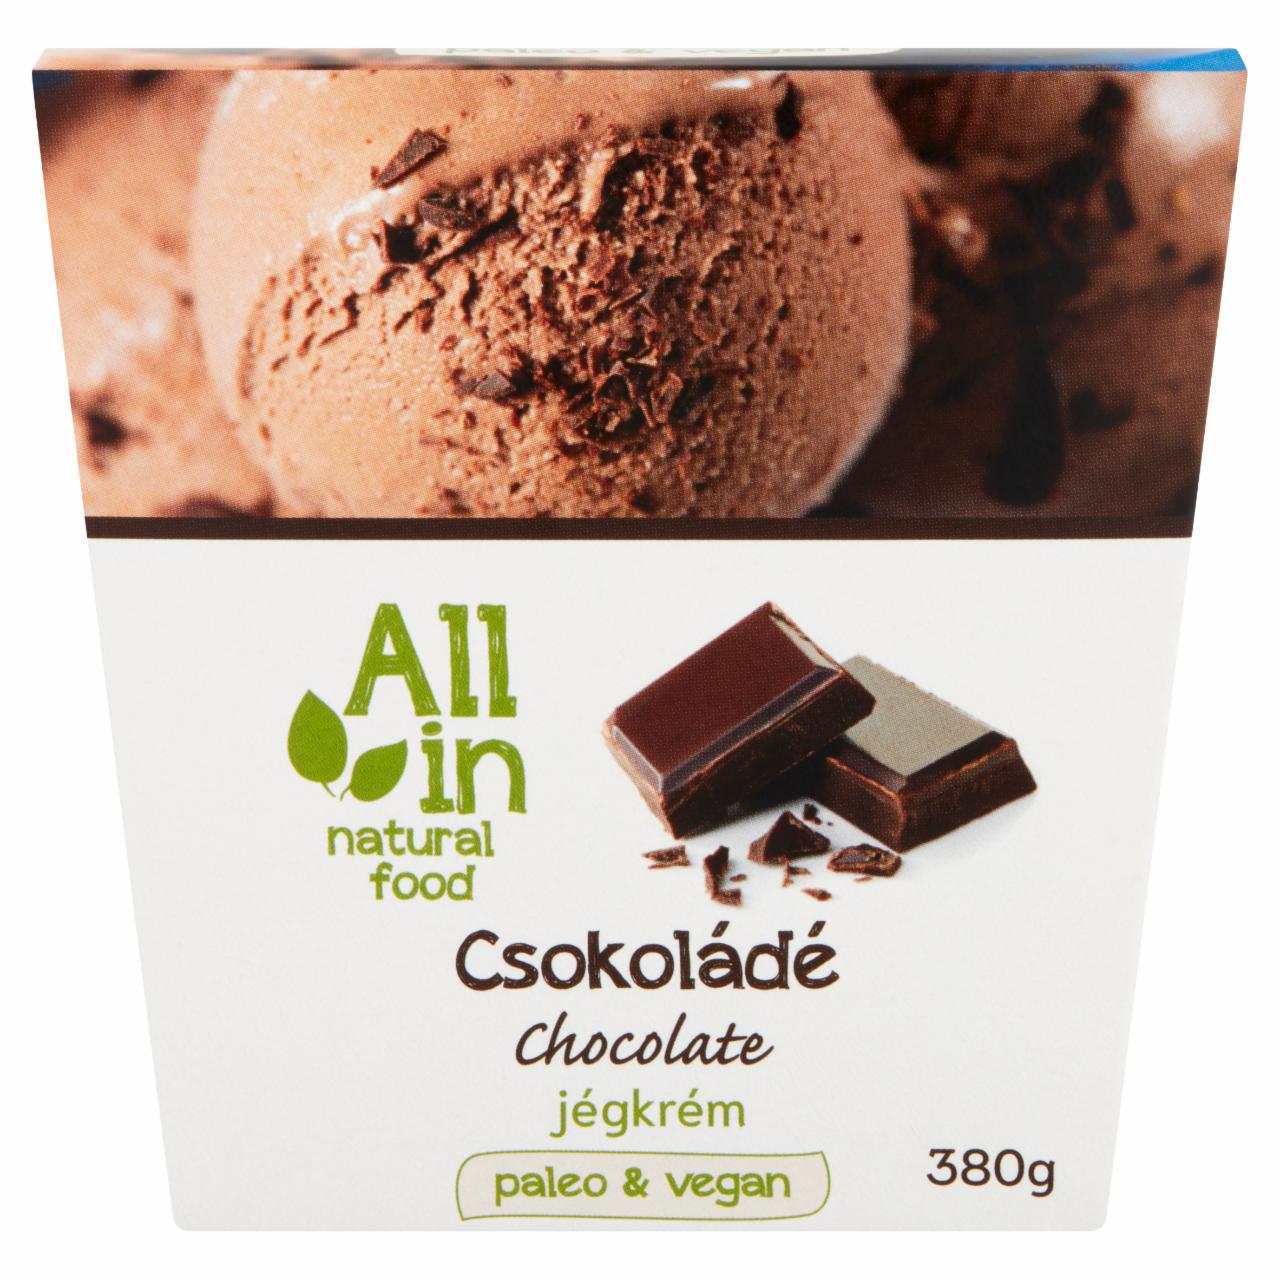 Képek - ALL IN natural food csokoládé jégkrém 380 g